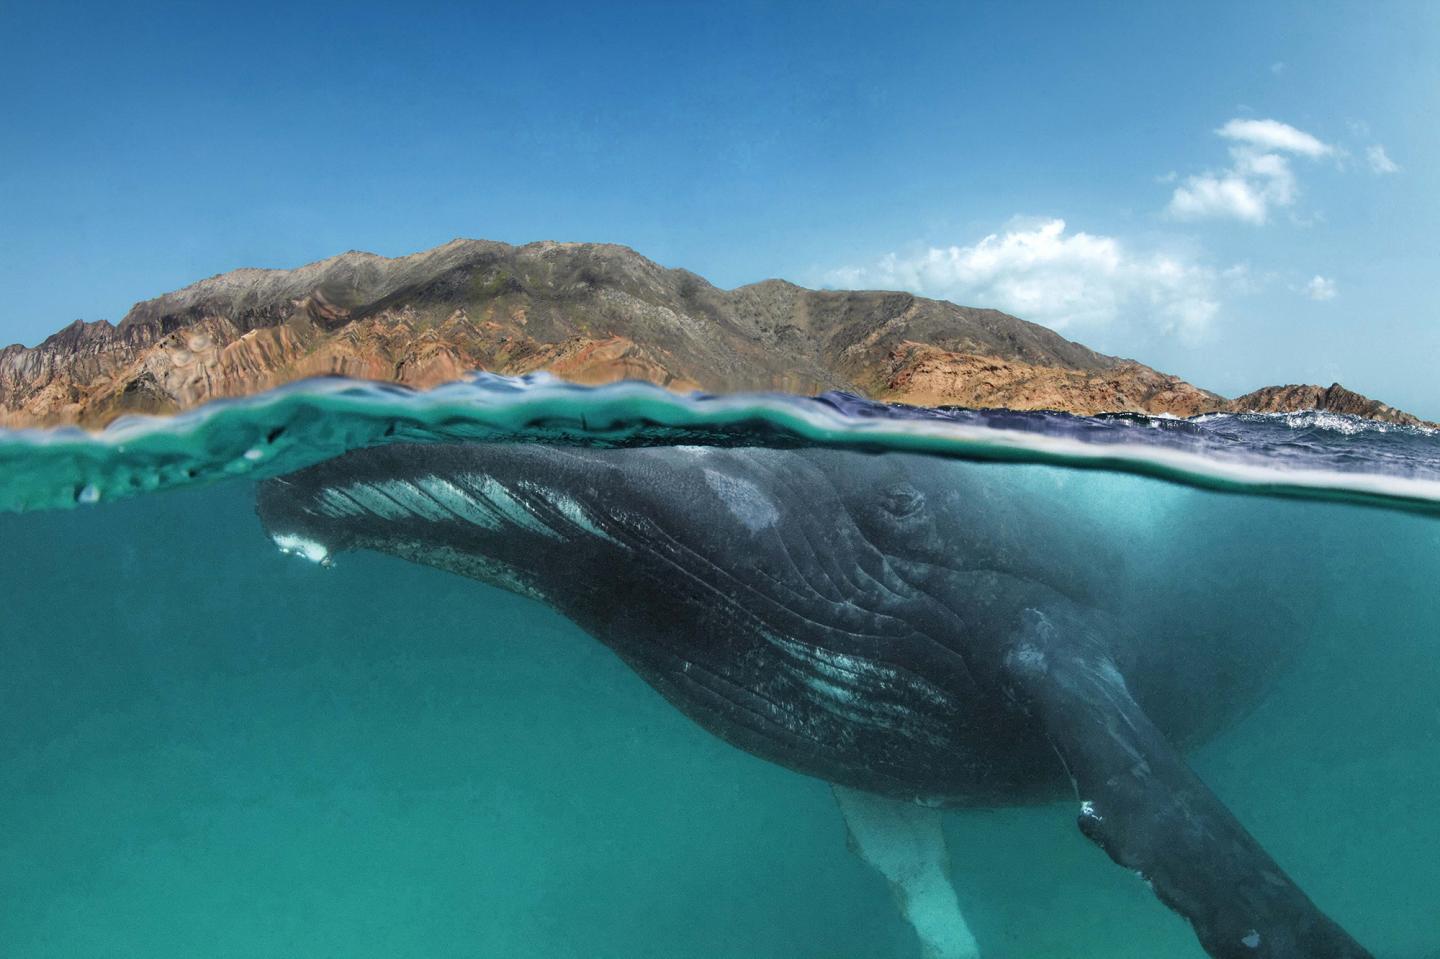 Arabian Sea Humpback Whale